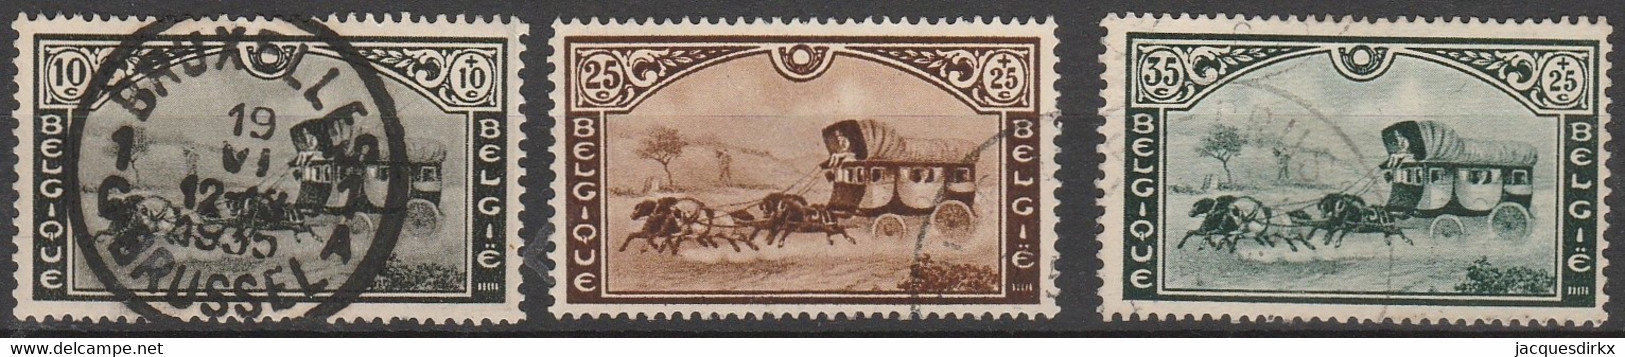 Belgie  .   OBP   .    407/409      .    O   .    Gestempeld  .  /  .  Oblitéré - Used Stamps